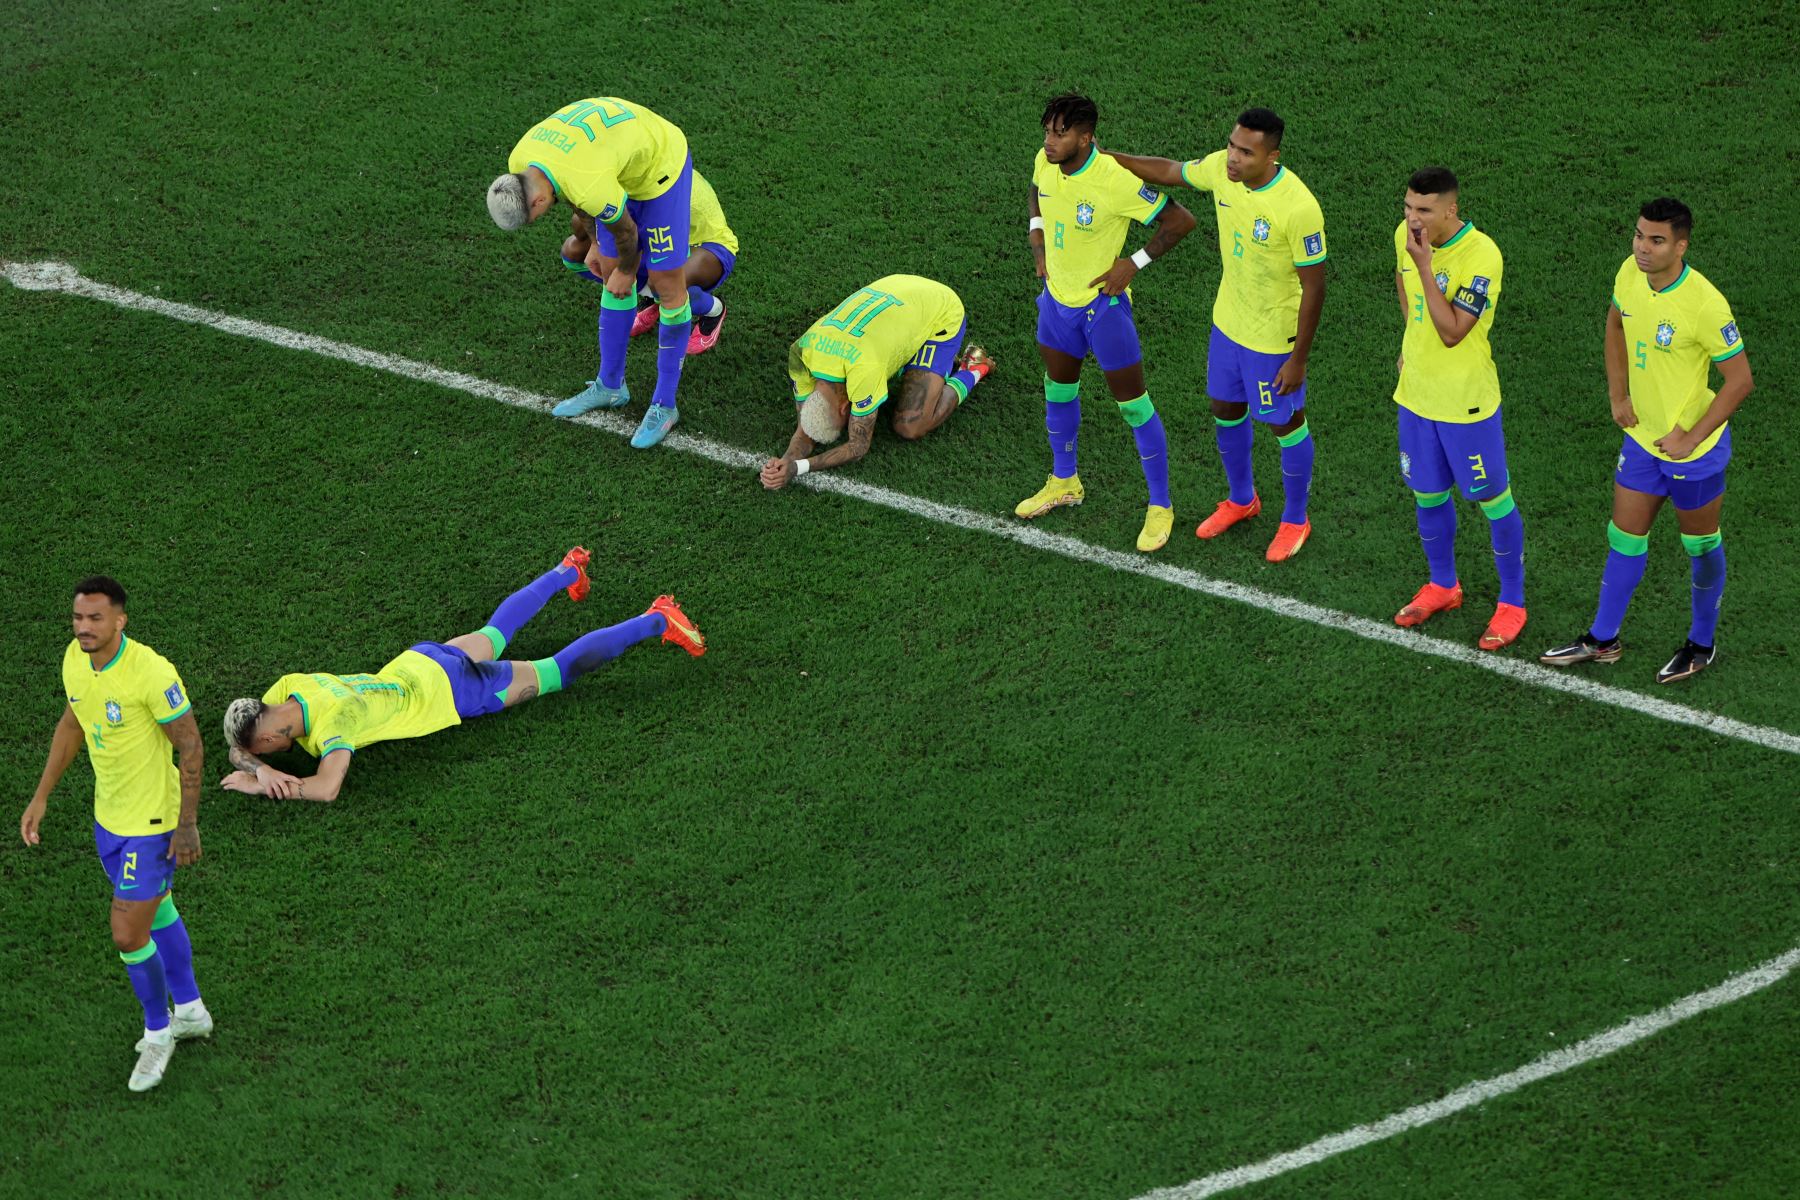 Los jugadores de Brasil reaccionan después de perder el partido de fútbol de cuartos de final de la Copa Mundial Qatar 2022 entre Croacia y Brasil en el Education City Stadium en Al-Rayyan, al oeste de Doha, el 9 de diciembre de 2022.
Foto: AFP